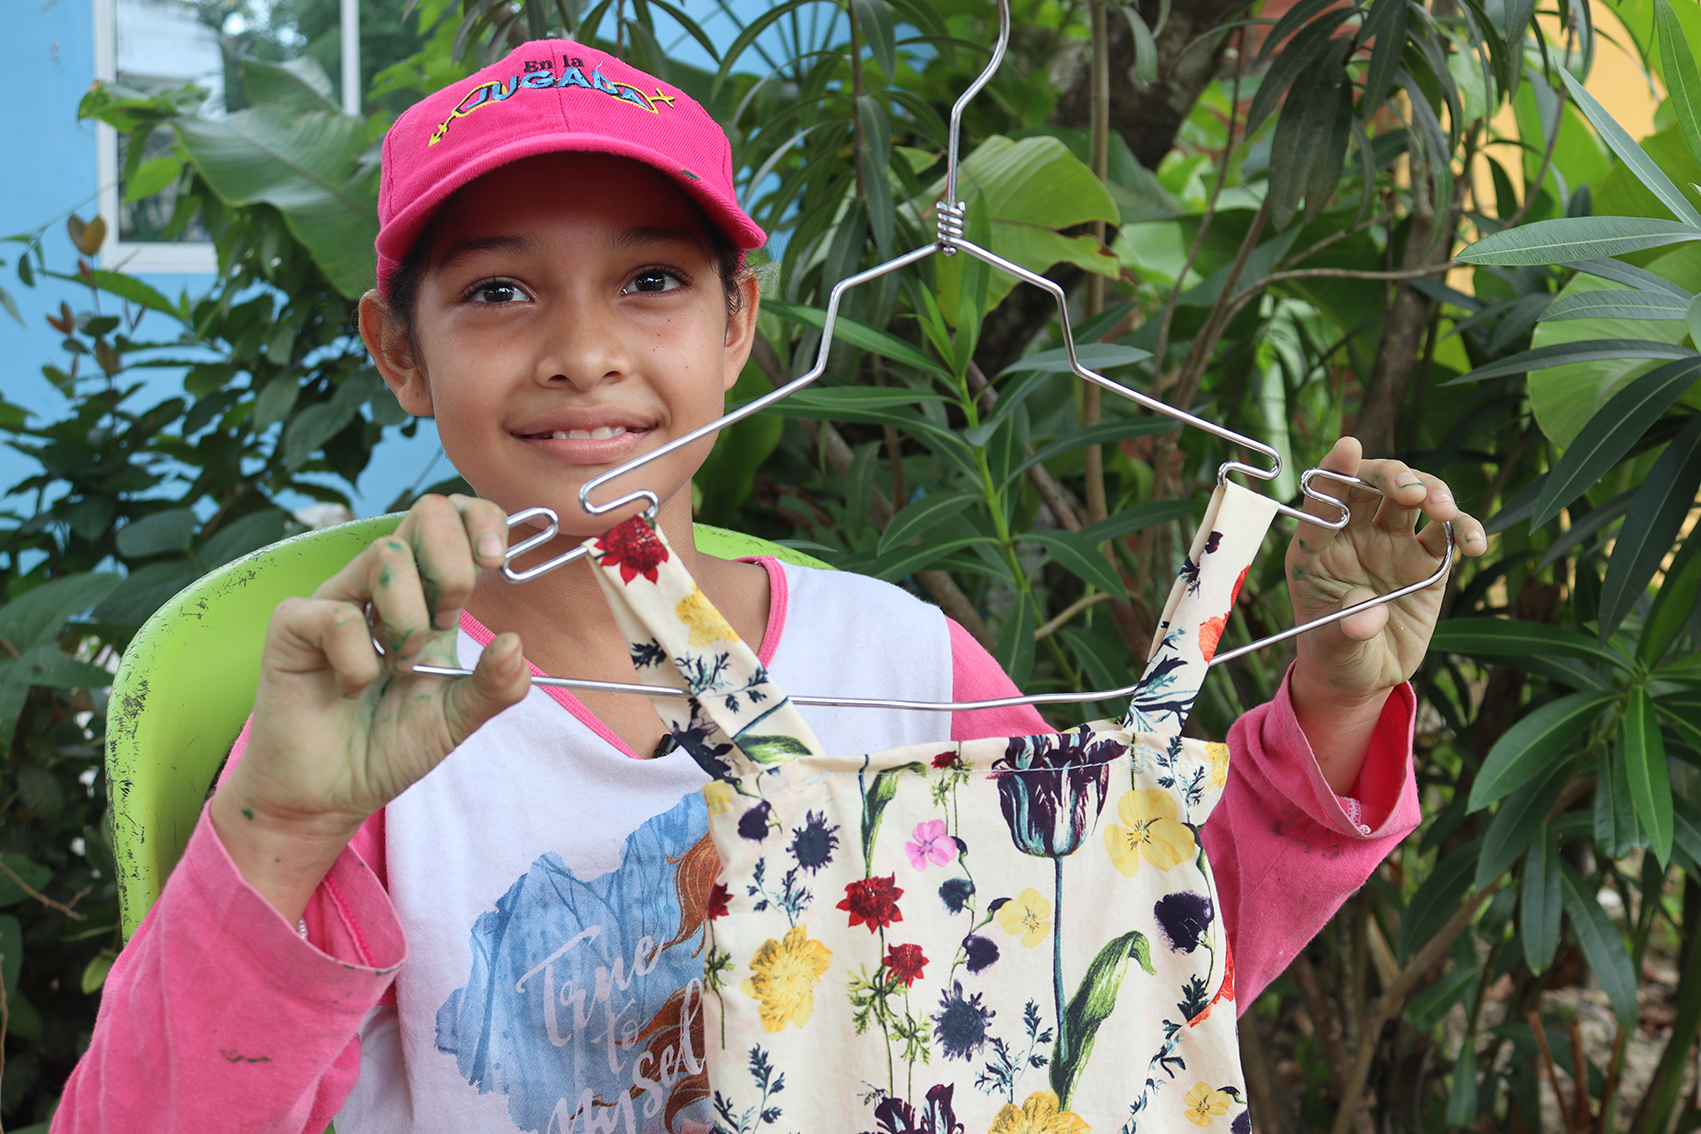 La niña Erleidis Vásquez, migrante oriunda de Maracaibo de solo 11 años de edad nos cuenta “quiero ser modista profesional”